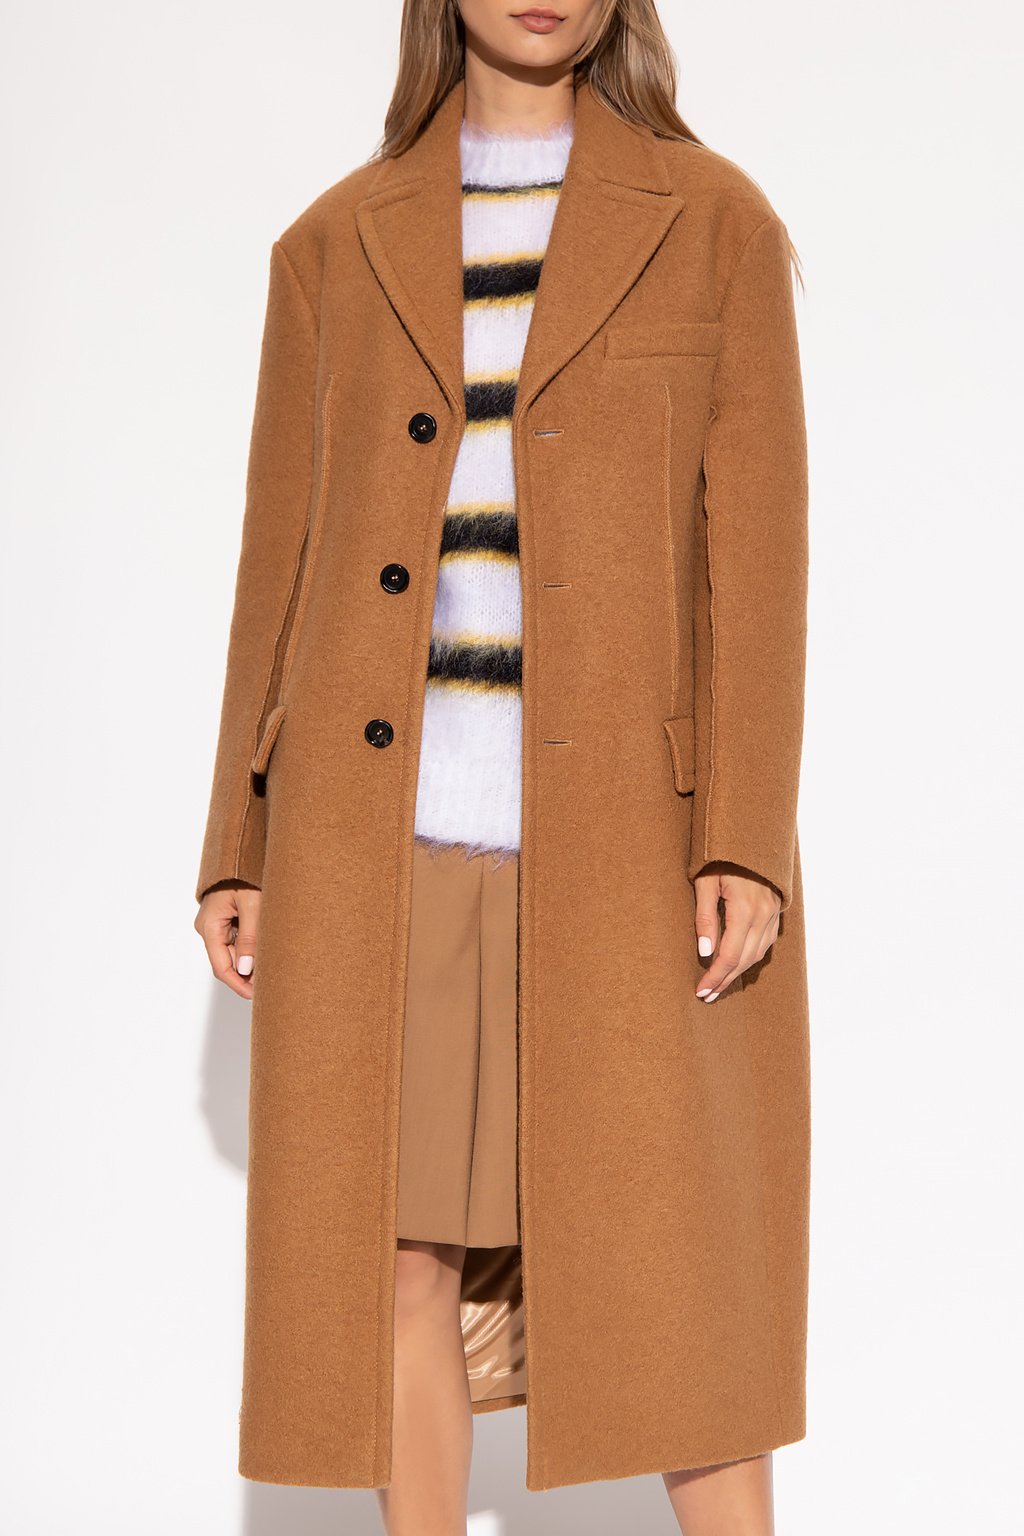 IetpShops Mozambique - marni faux fur stole item - Brown Wool coat